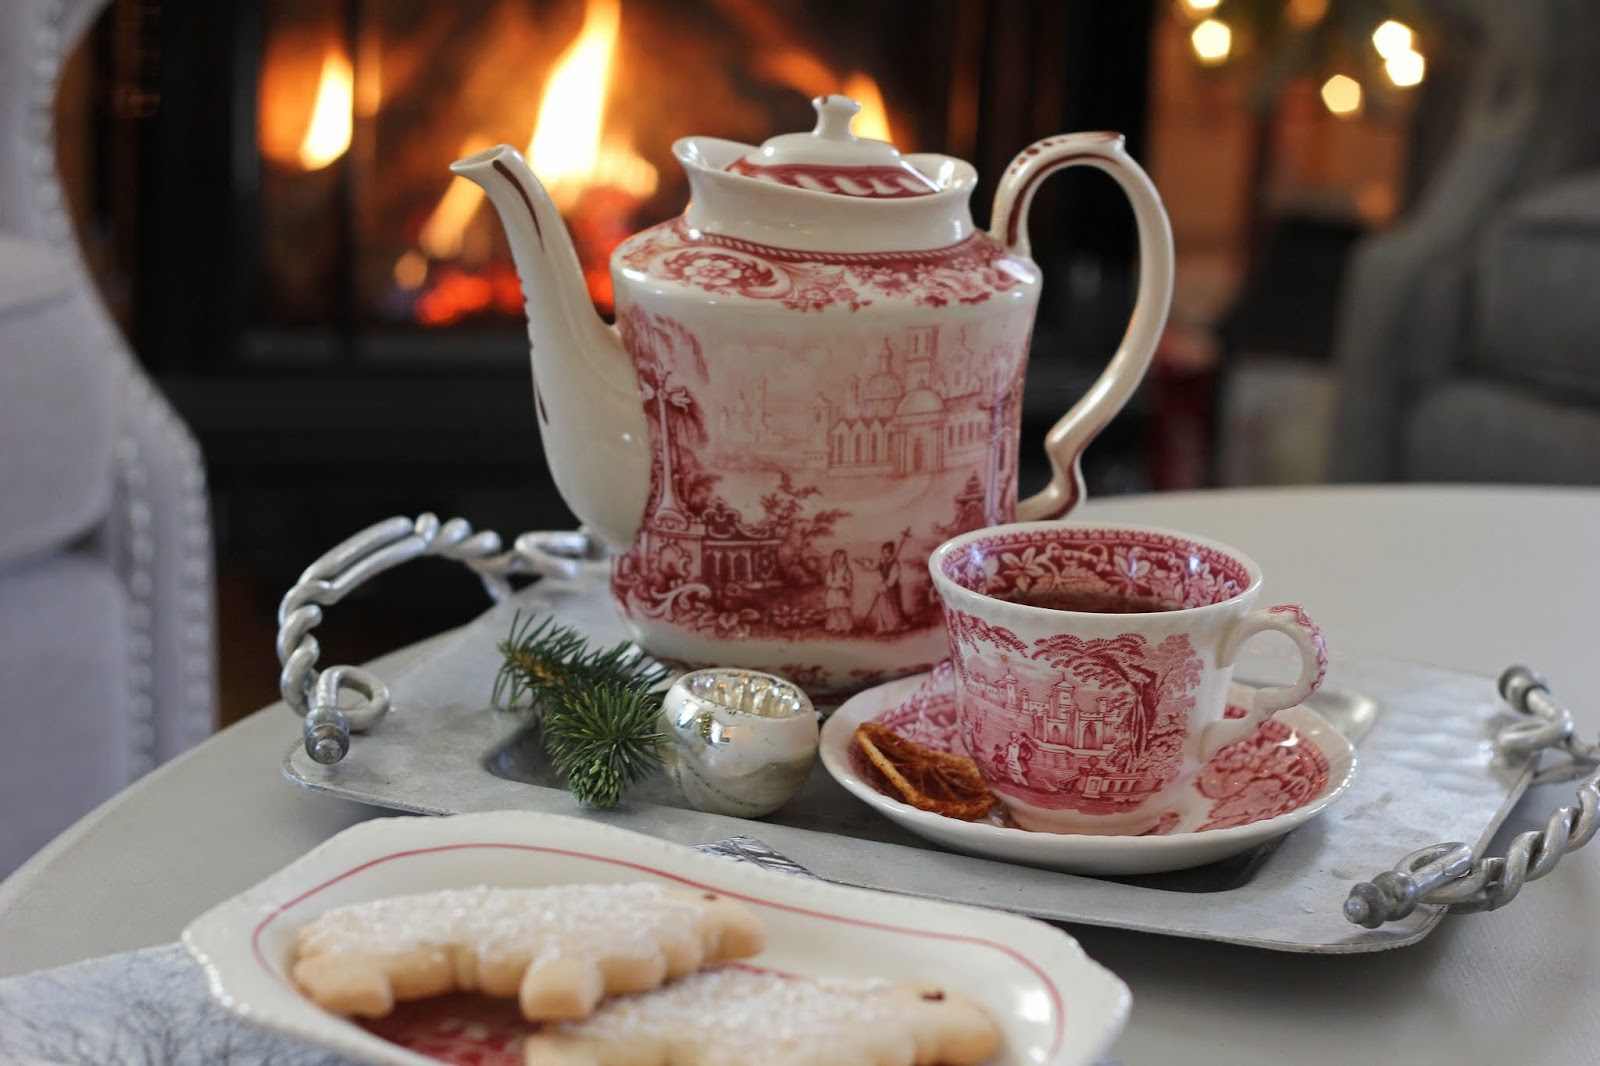 Aiken House & Gardens: A Cozy Fireside Tea